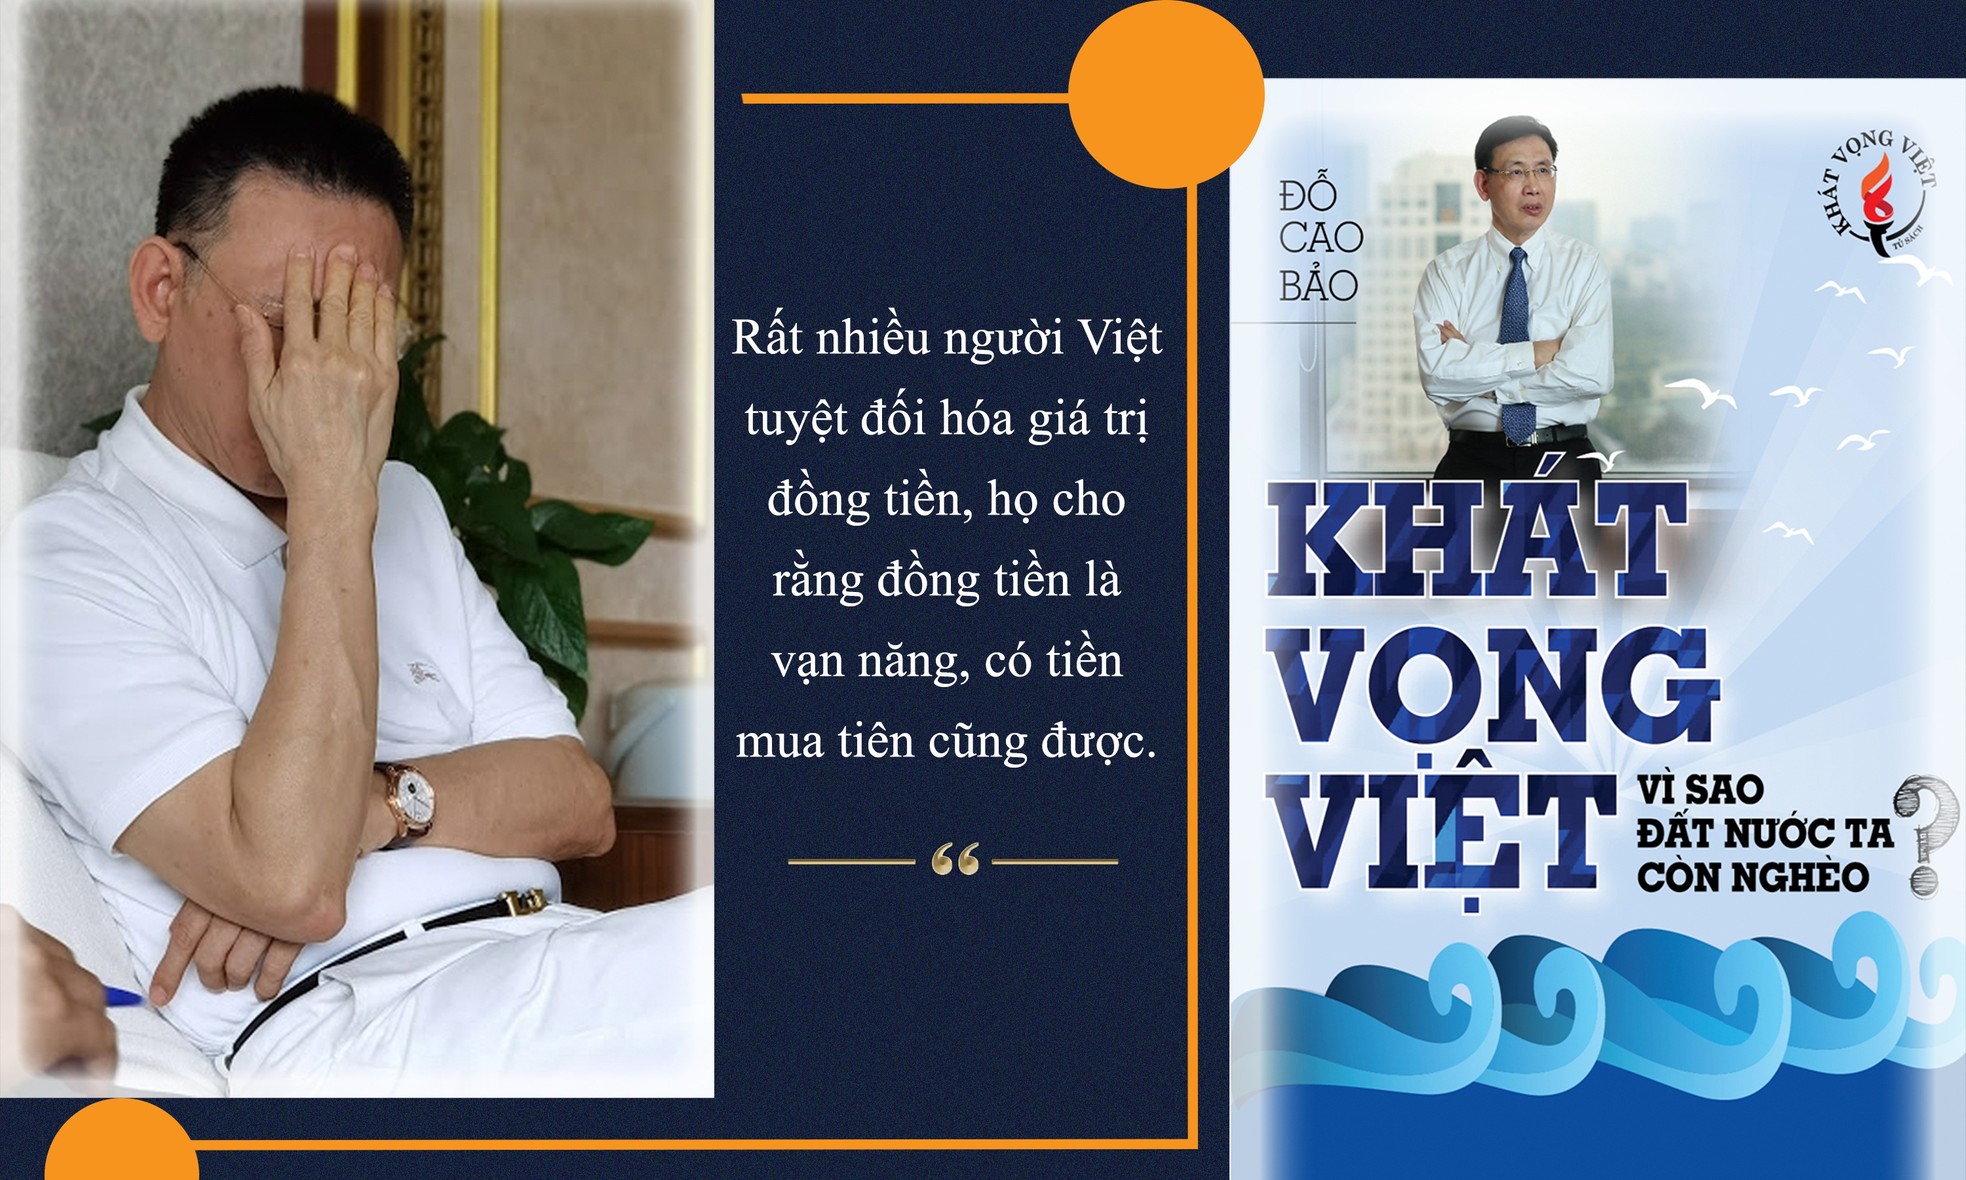 Doanh nhân Đỗ Cao Bảo: Người Việt không yêu nước giống như người Hàn, người Nhật - ảnh 2